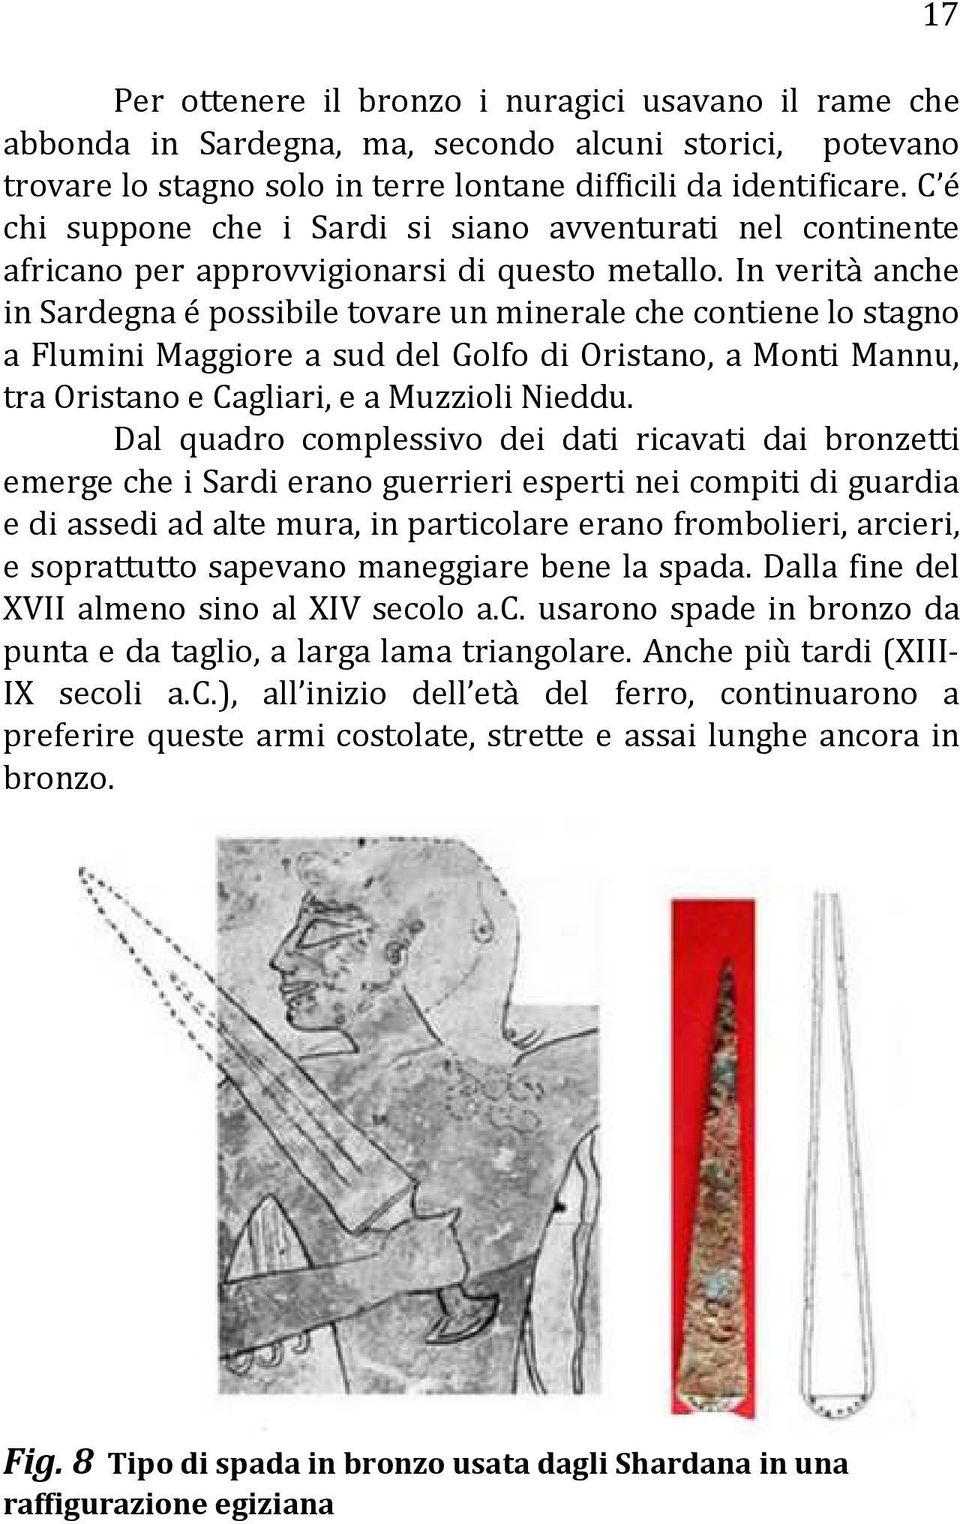 In verità anche in Sardegna é possibile tovare un minerale che contiene lo stagno a Flumini Maggiore a sud del Golfo di Oristano, a Monti Mannu, tra Oristano e Cagliari, e a Muzzioli Nieddu.